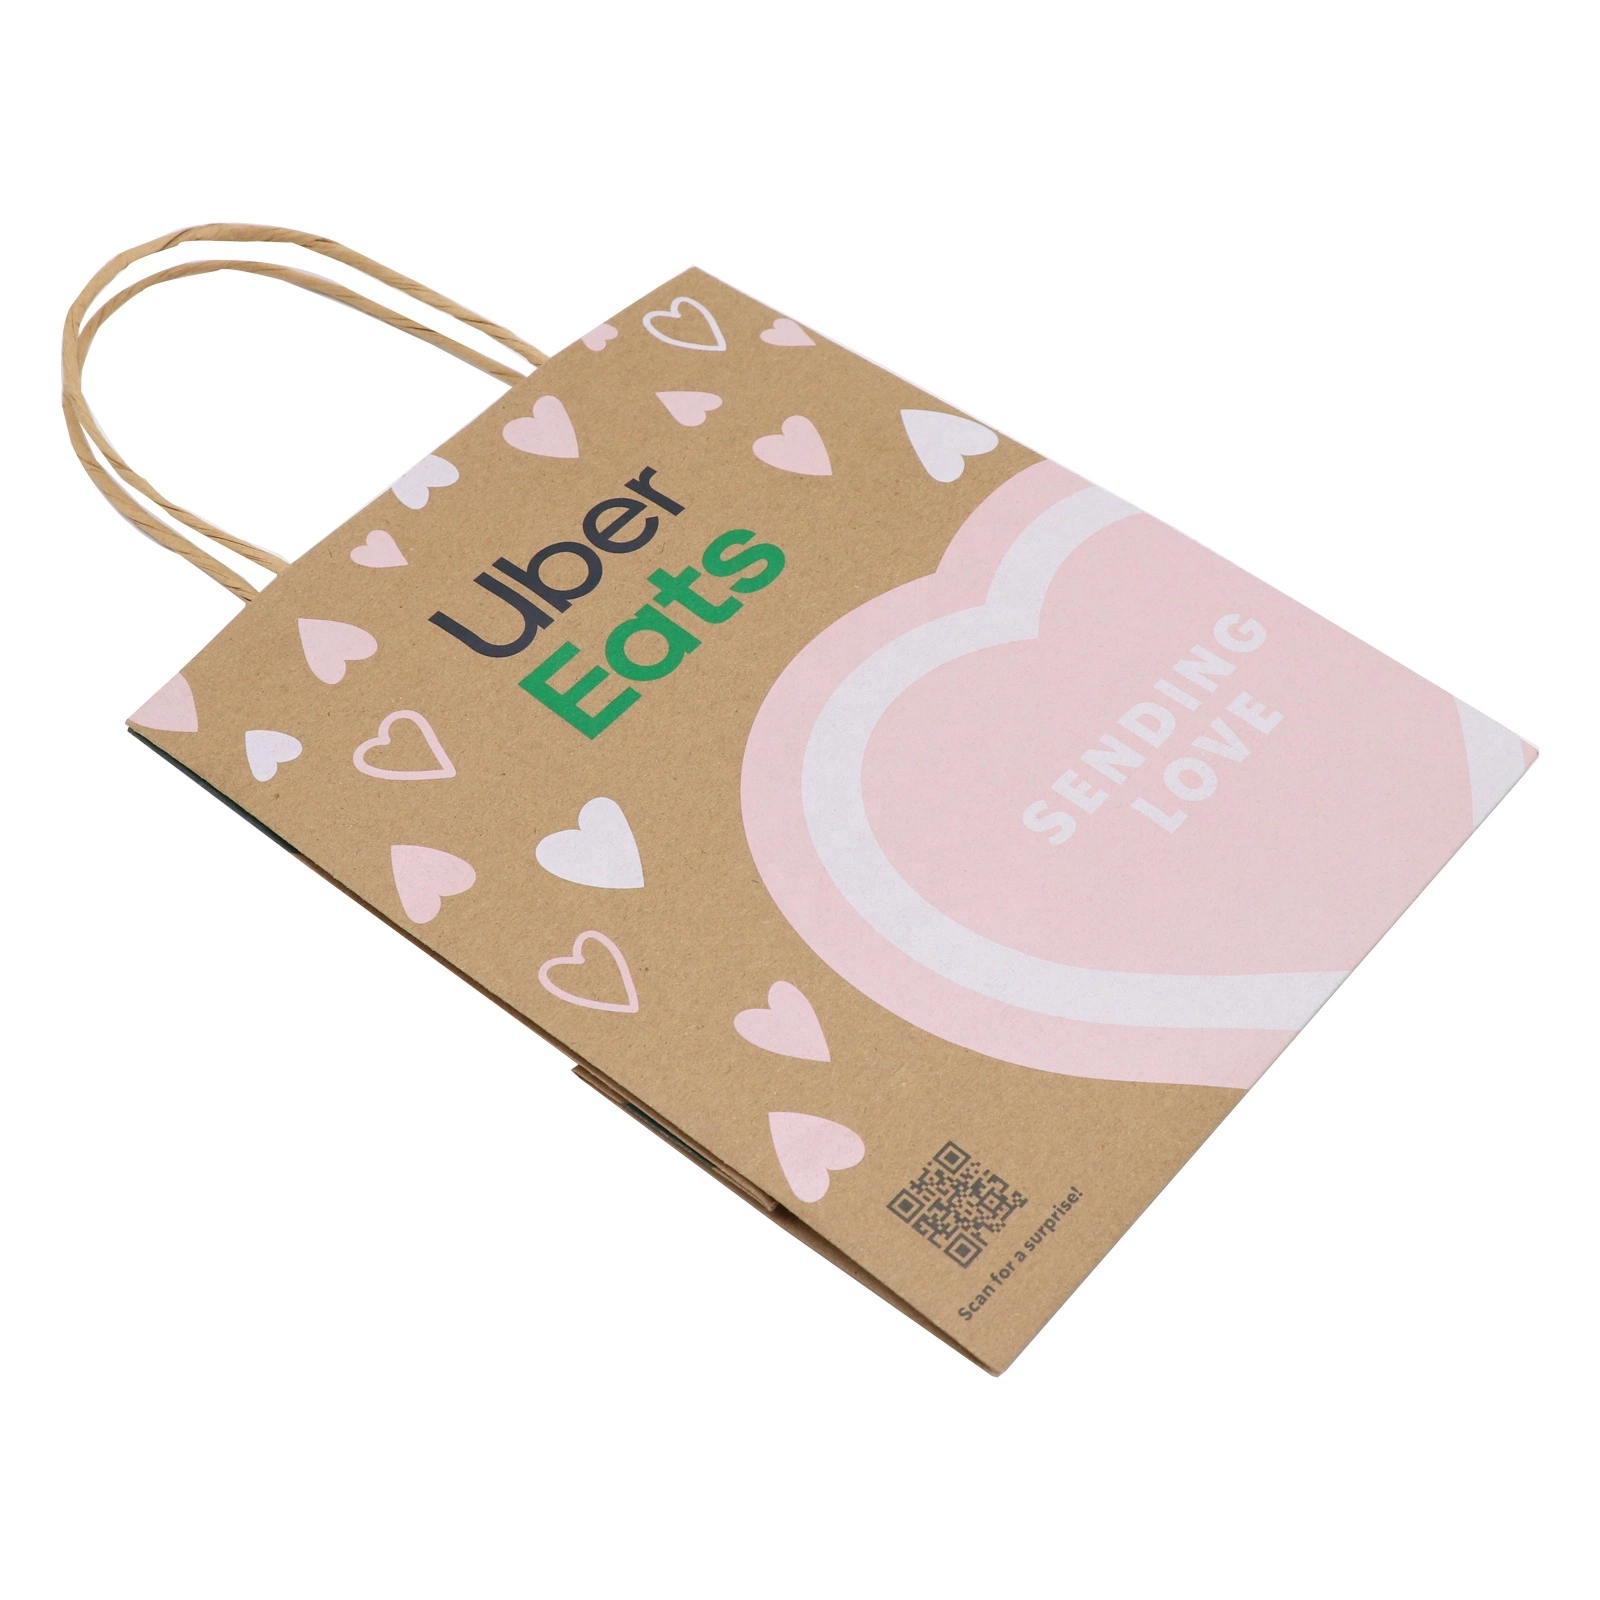 Prix d'usine Sac cadeau personnalisé sac de papier imprimé du logo de l'emballage cadeau avec Poignée Torsadée un sac de shopping